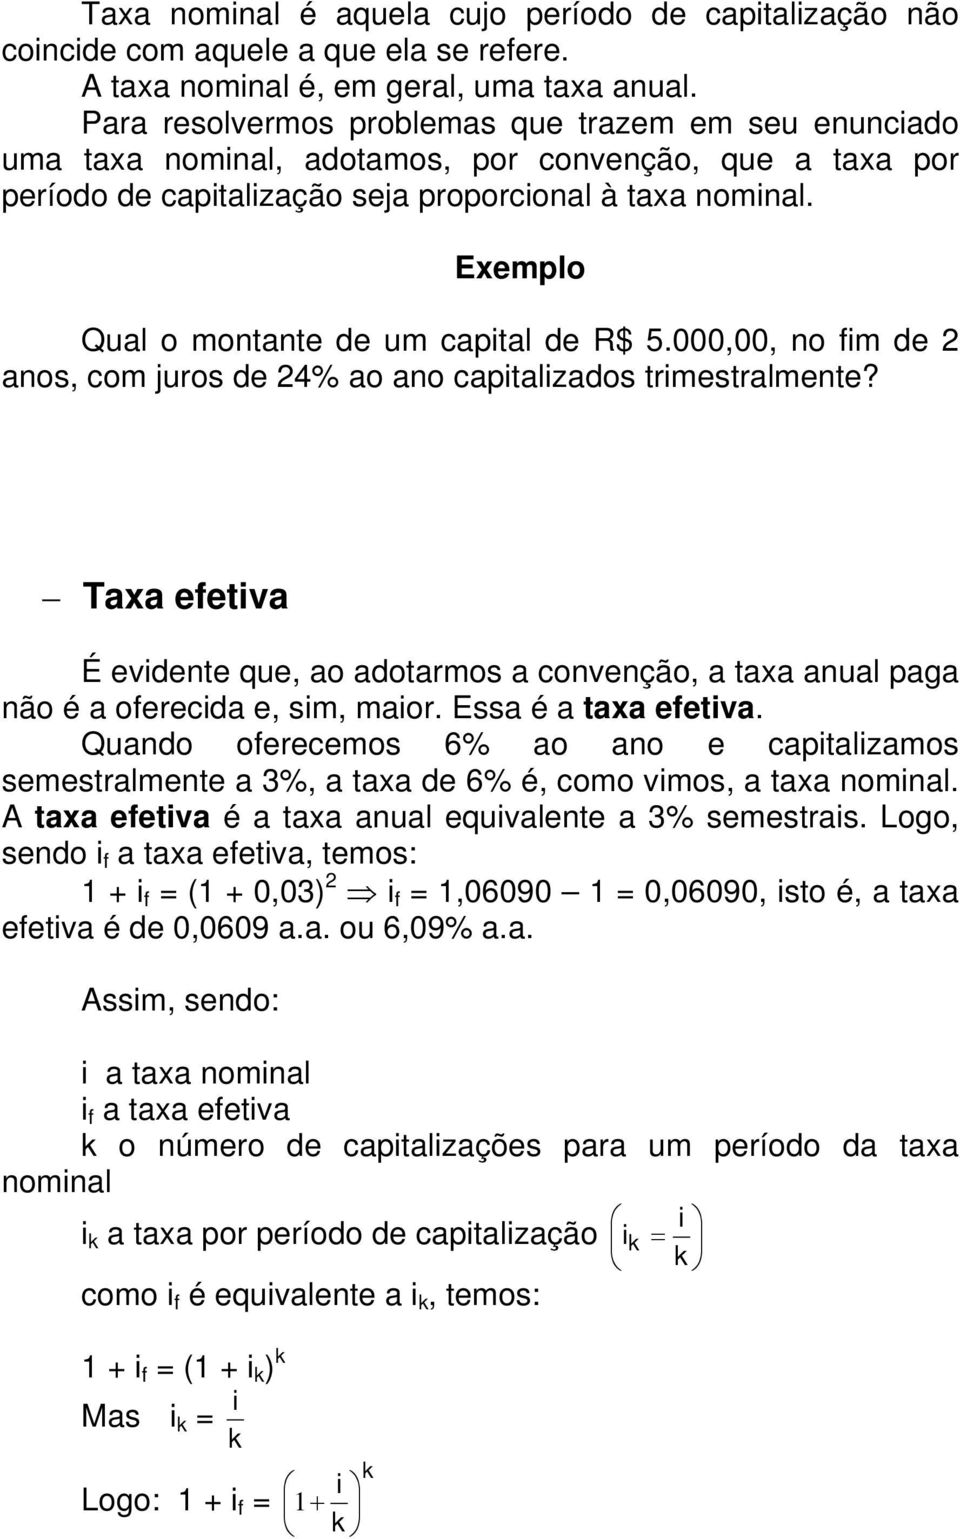 Exemplo Qual o montante de um capital de R$ 5.000,00, no fim de 2 anos, com juros de 24% ao ano capitalizados trimestralmente?